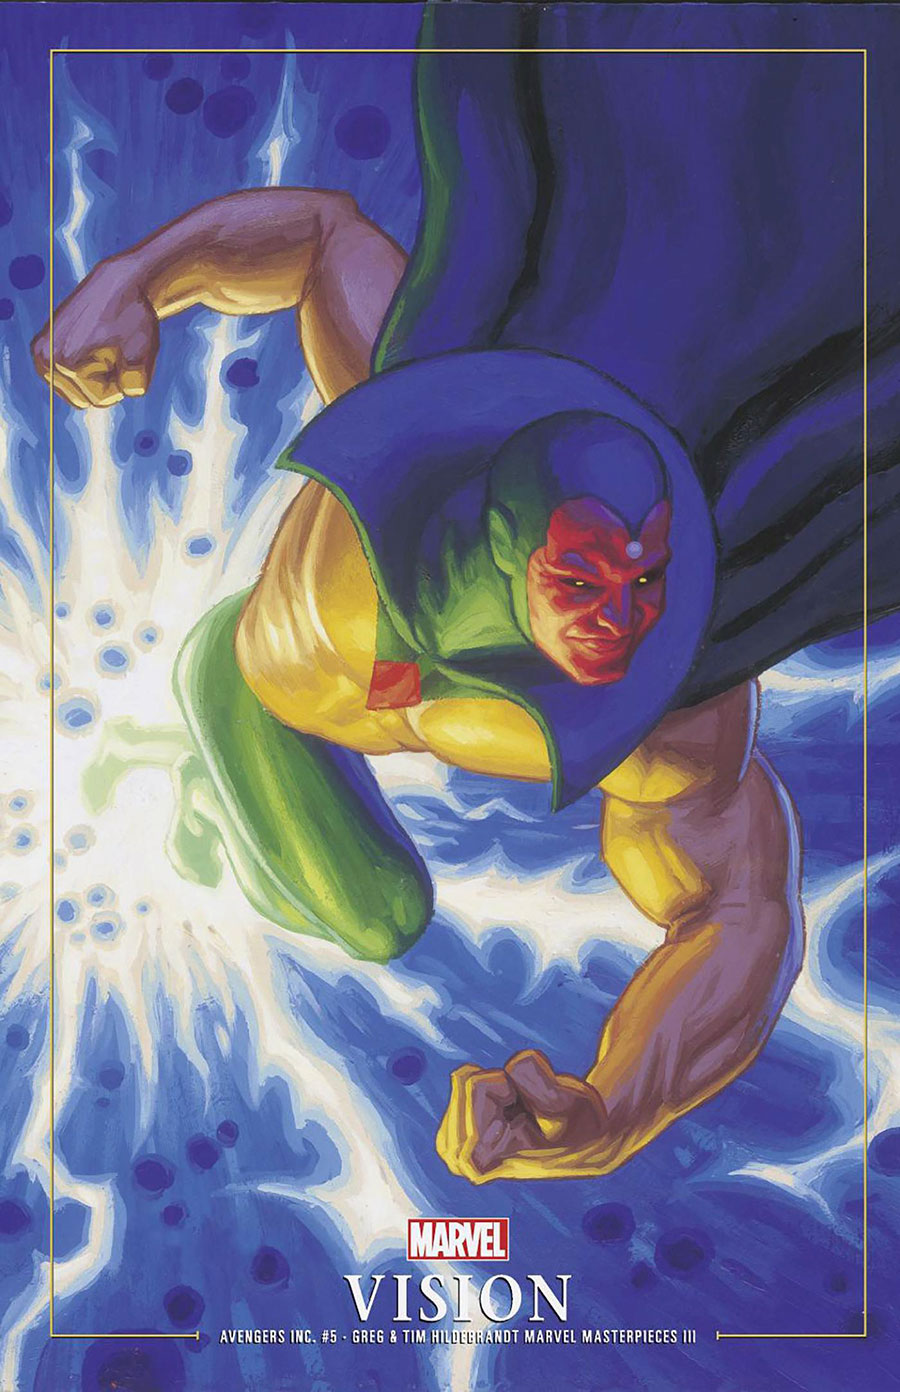 Avengers Inc #5 Cover C Variant Greg Hildebrandt & Tim Hildebrandt Marvel Masterpieces III Vision Cover